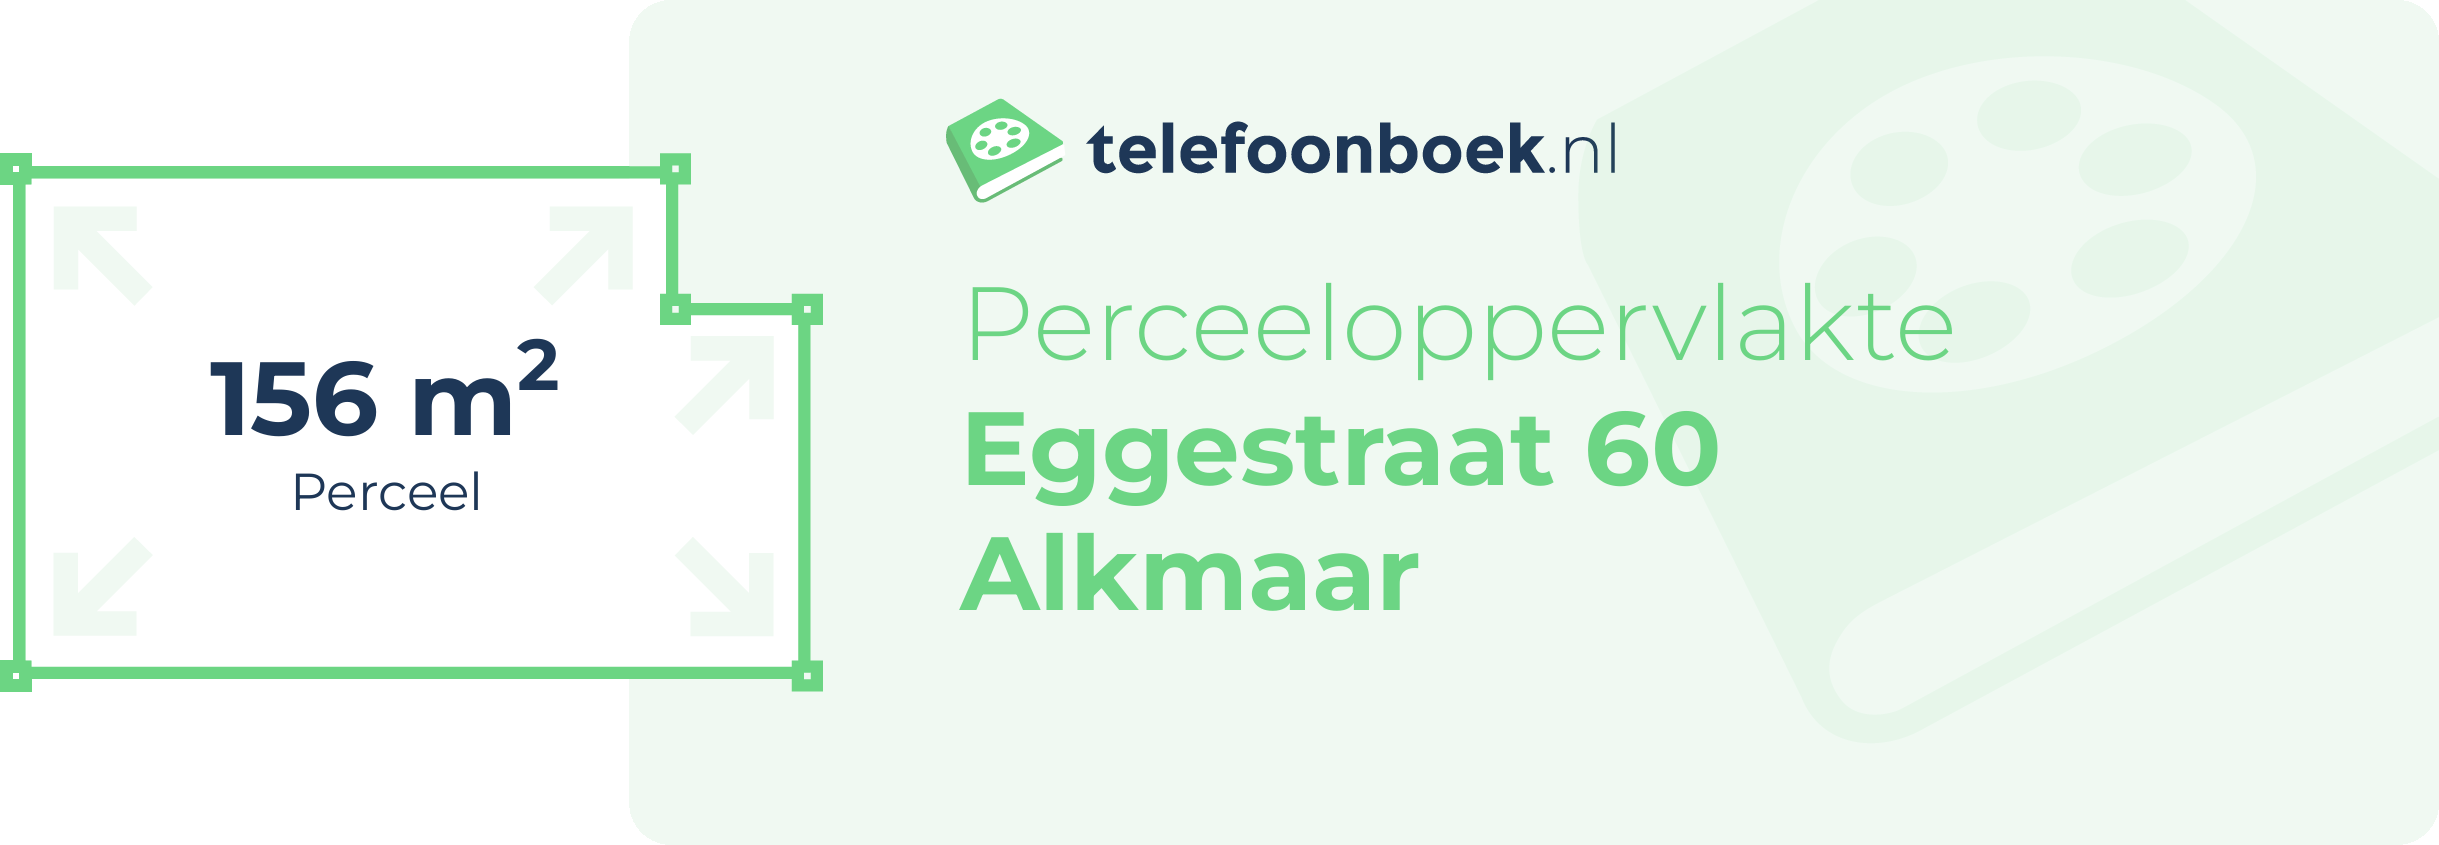 Perceeloppervlakte Eggestraat 60 Alkmaar